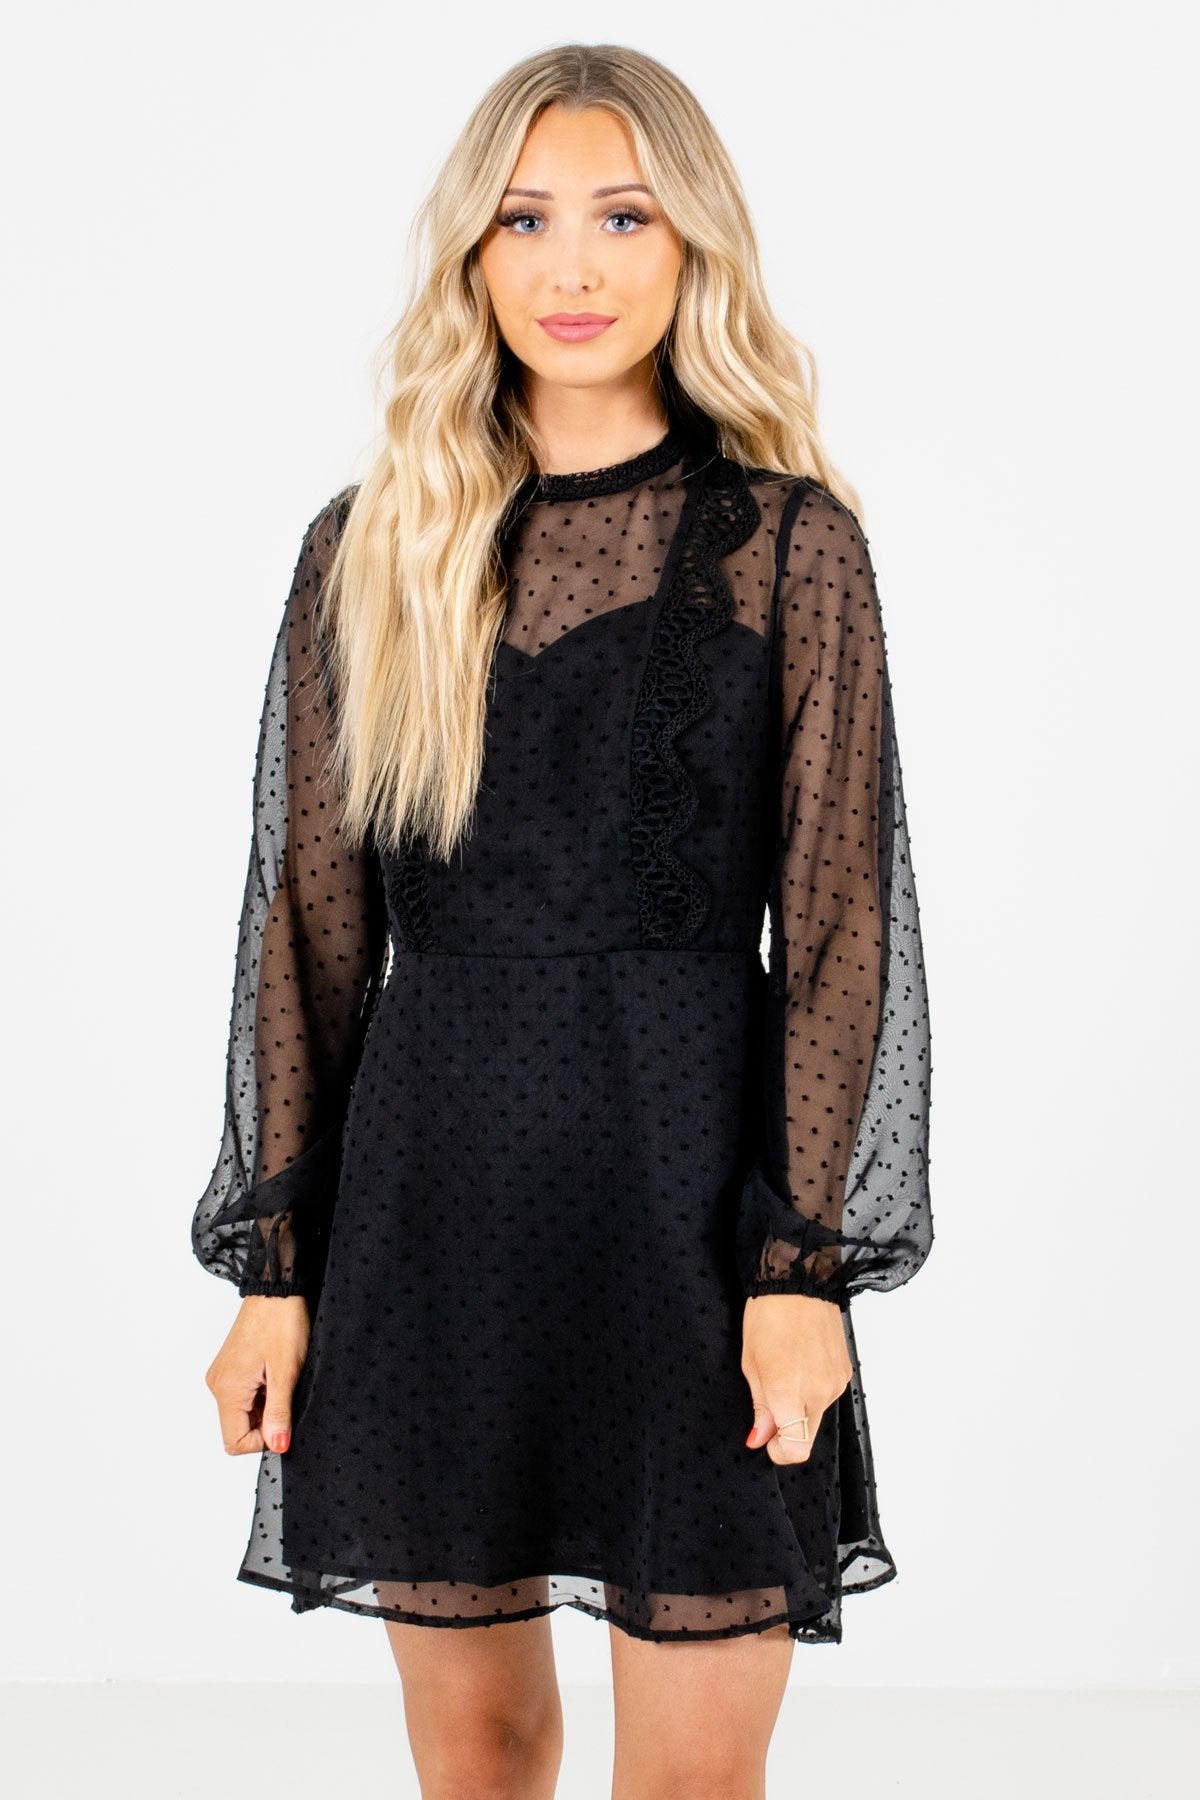 Fashion Icon Black Mini Dress | Boutique Mini Dresses for Women - Bella ...